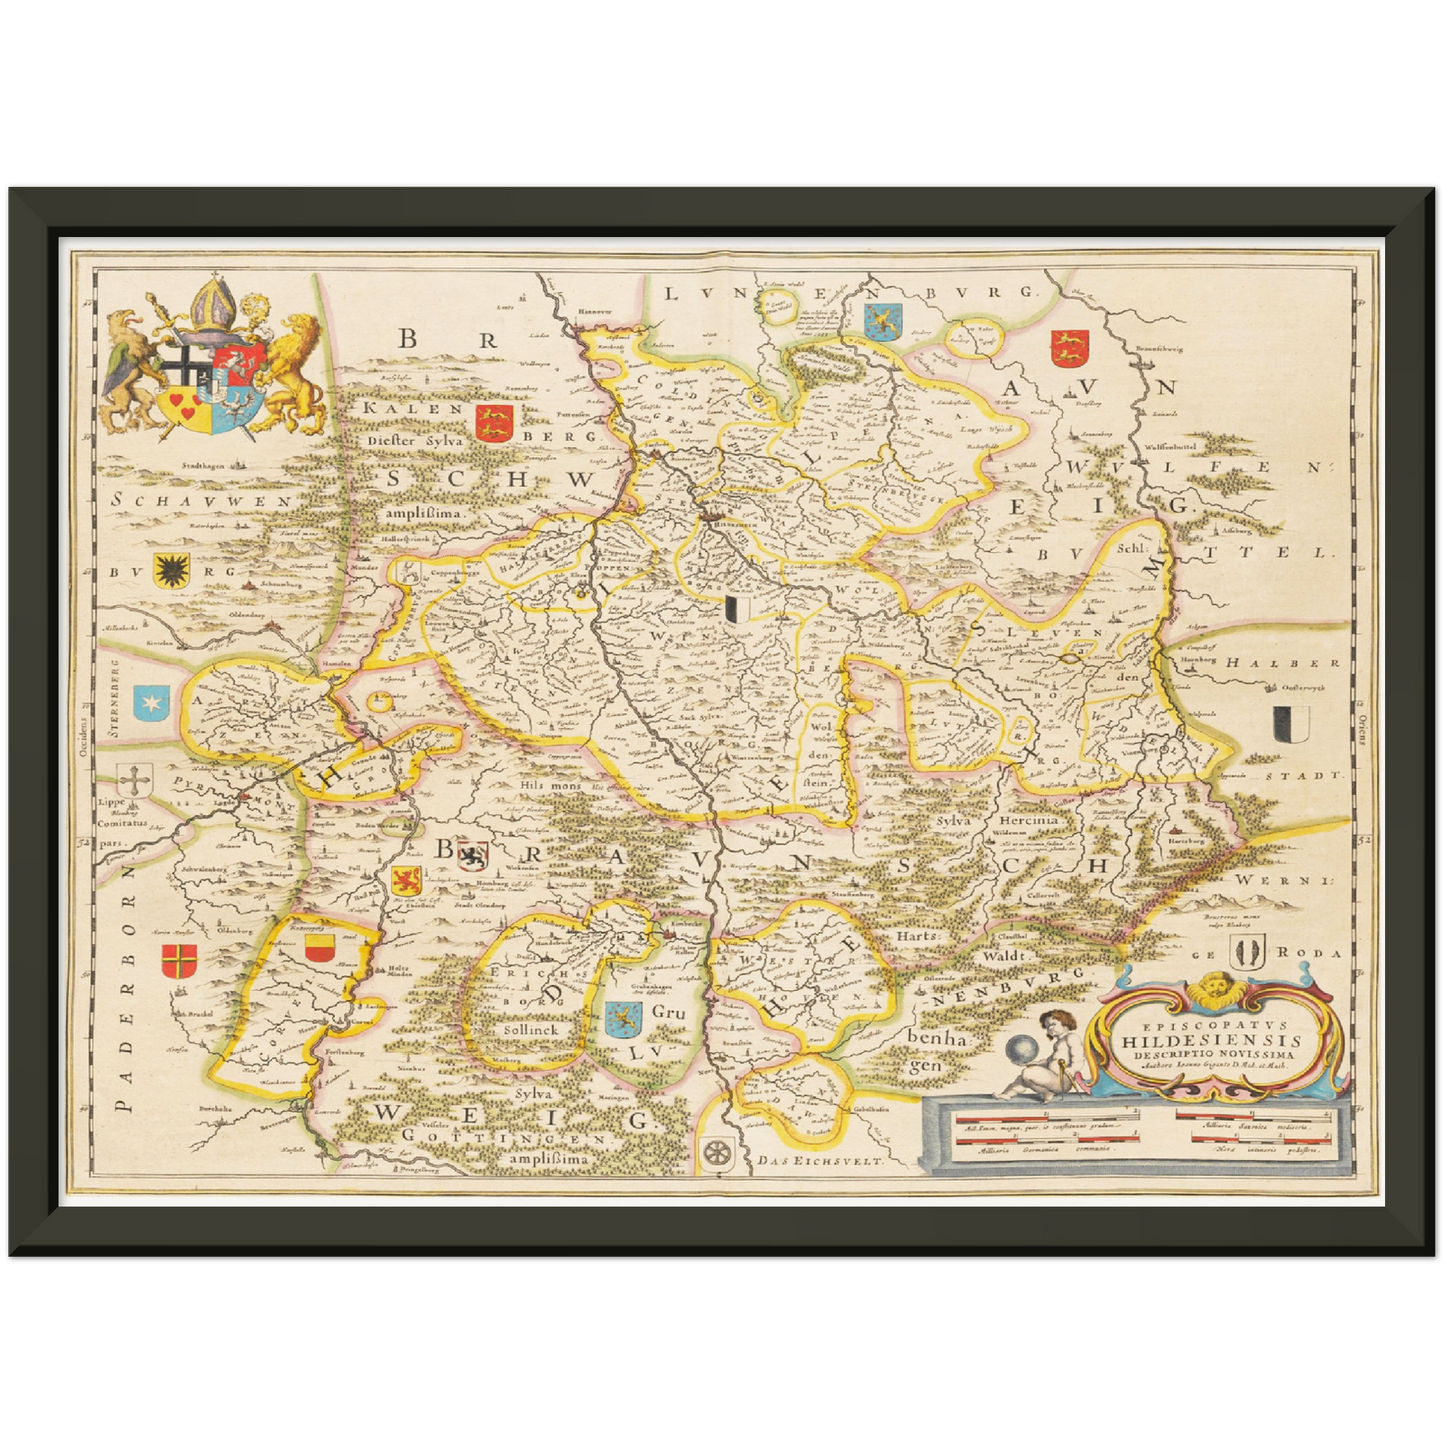 Historische Landkarte Hildesheim um 1635